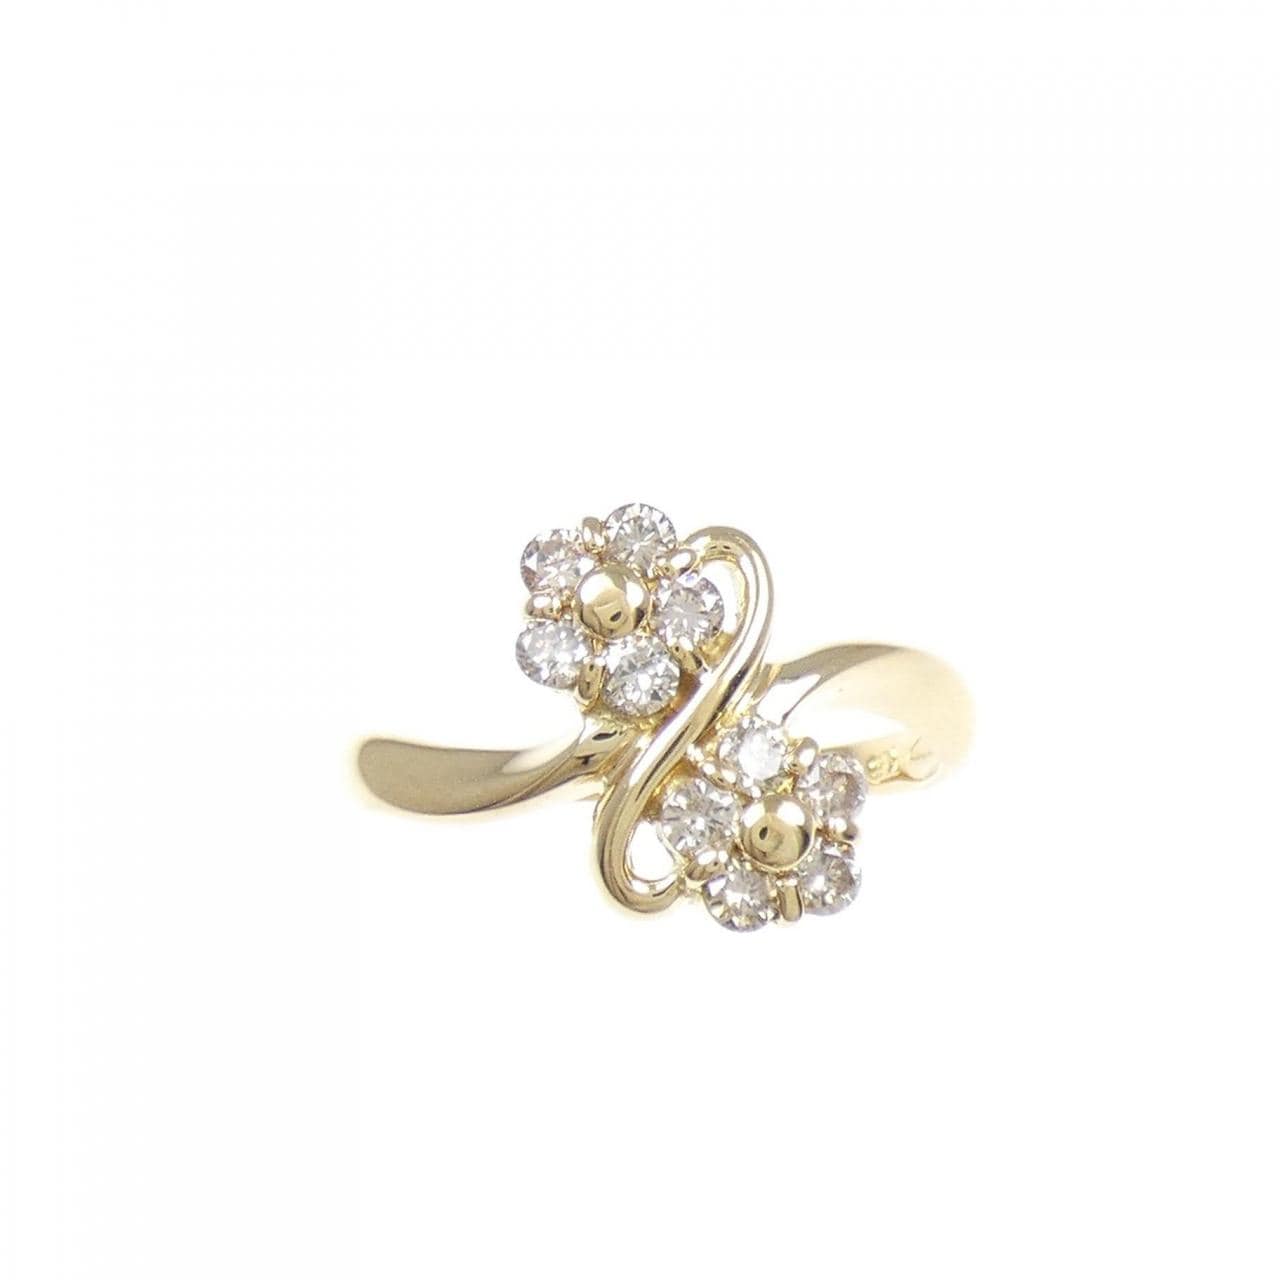 K18YG flower Diamond ring 0.30CT